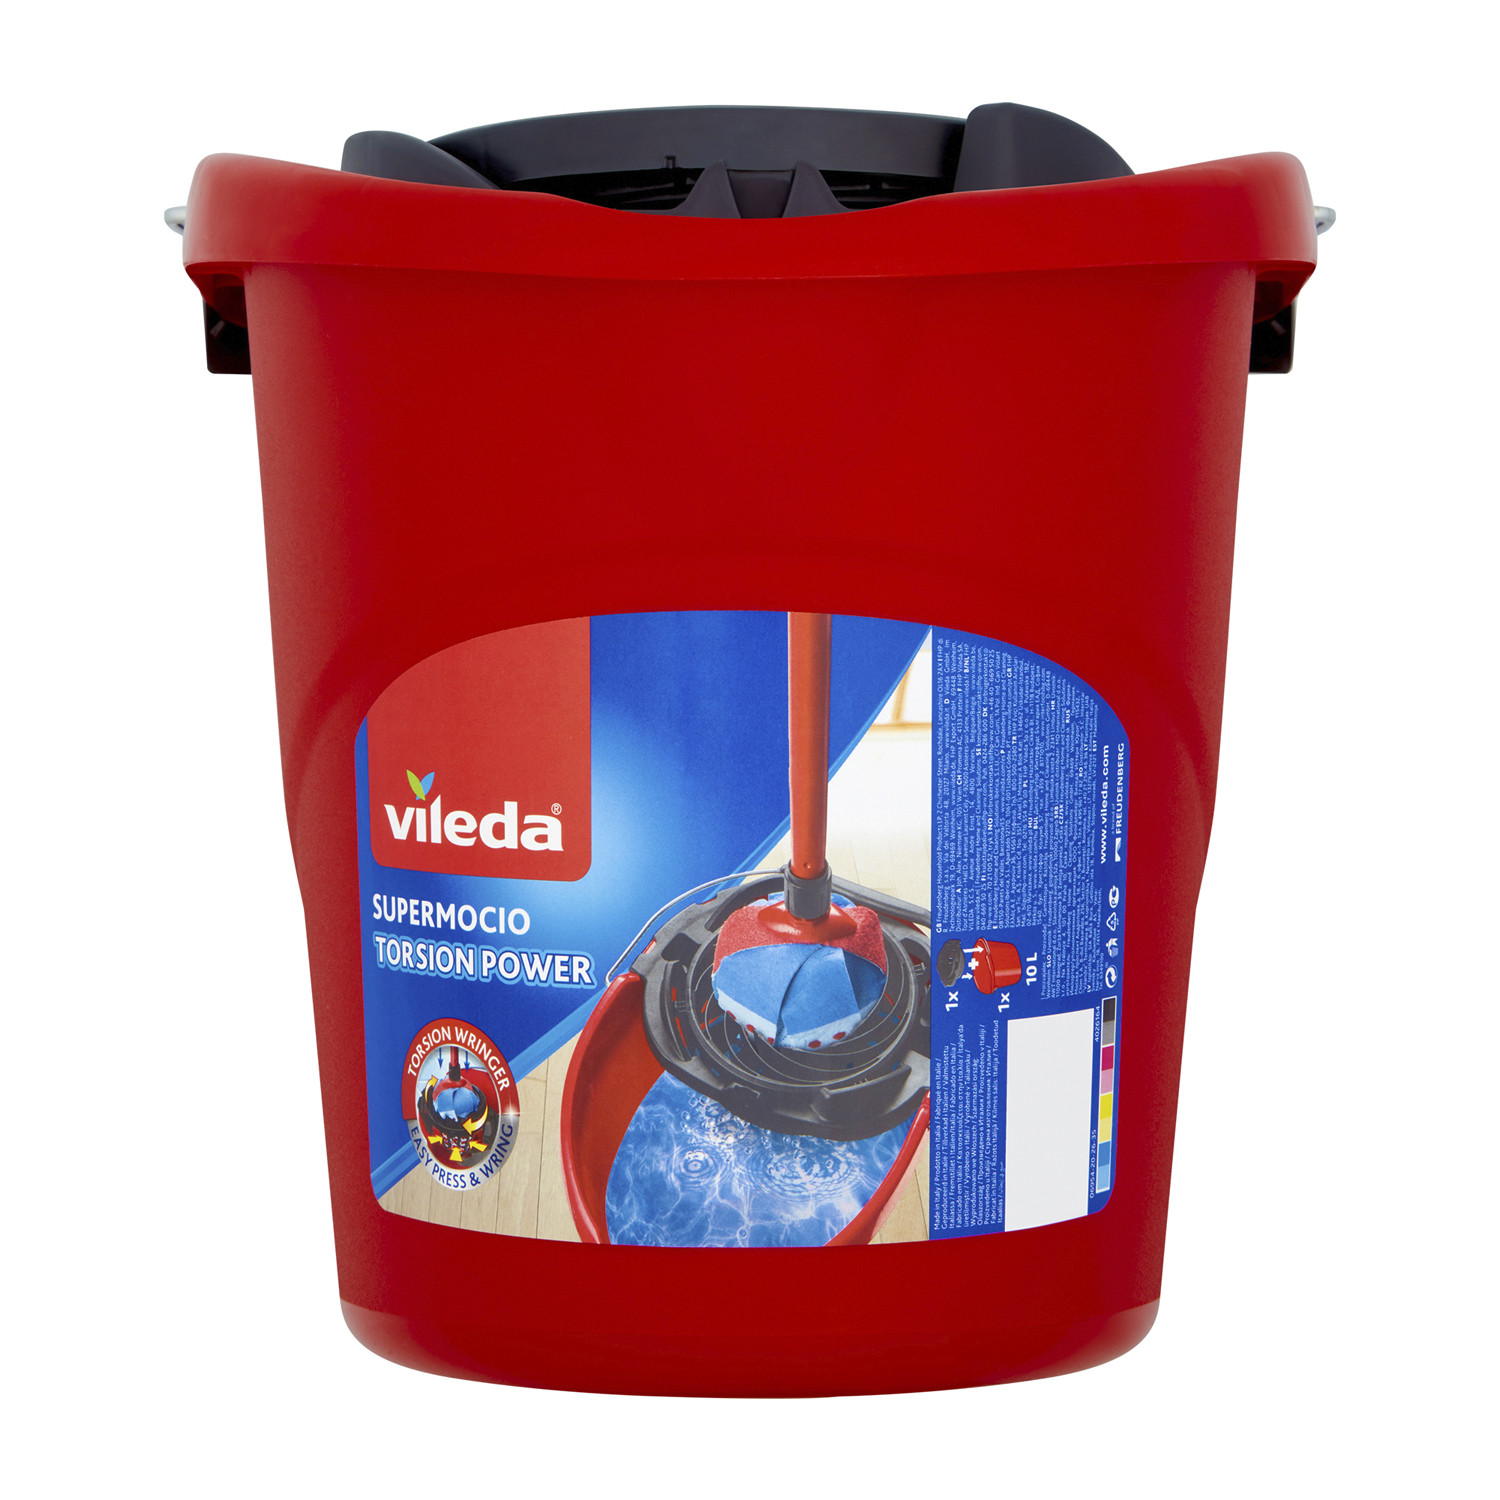 Vileda Supermocio Bucket and Wringer Image 2